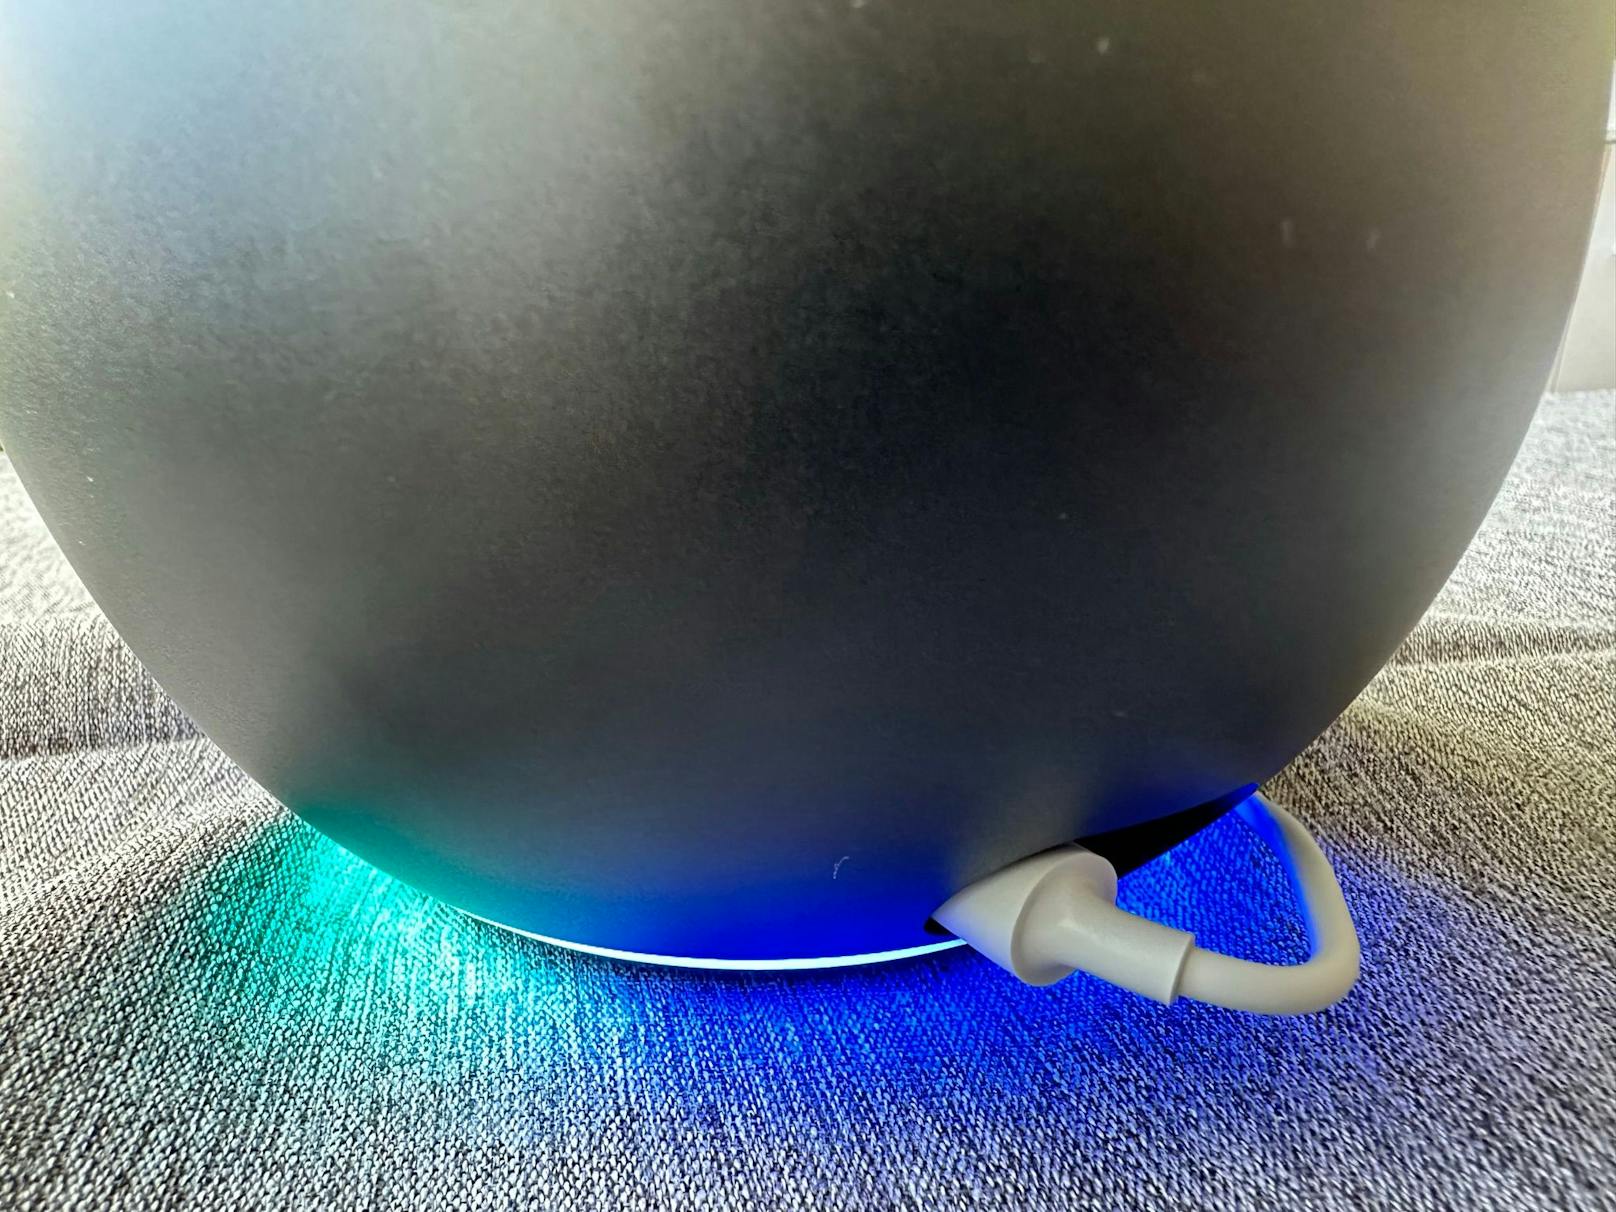 Kugelrund statt in Zylinder-Form: Amazon hat 2020 alle drei seiner Echo-Speaker, den Echo, den Echo Dot und den neuen Echo Dot mit LED-Anzeige im neuen Look auf den Markt gebracht.